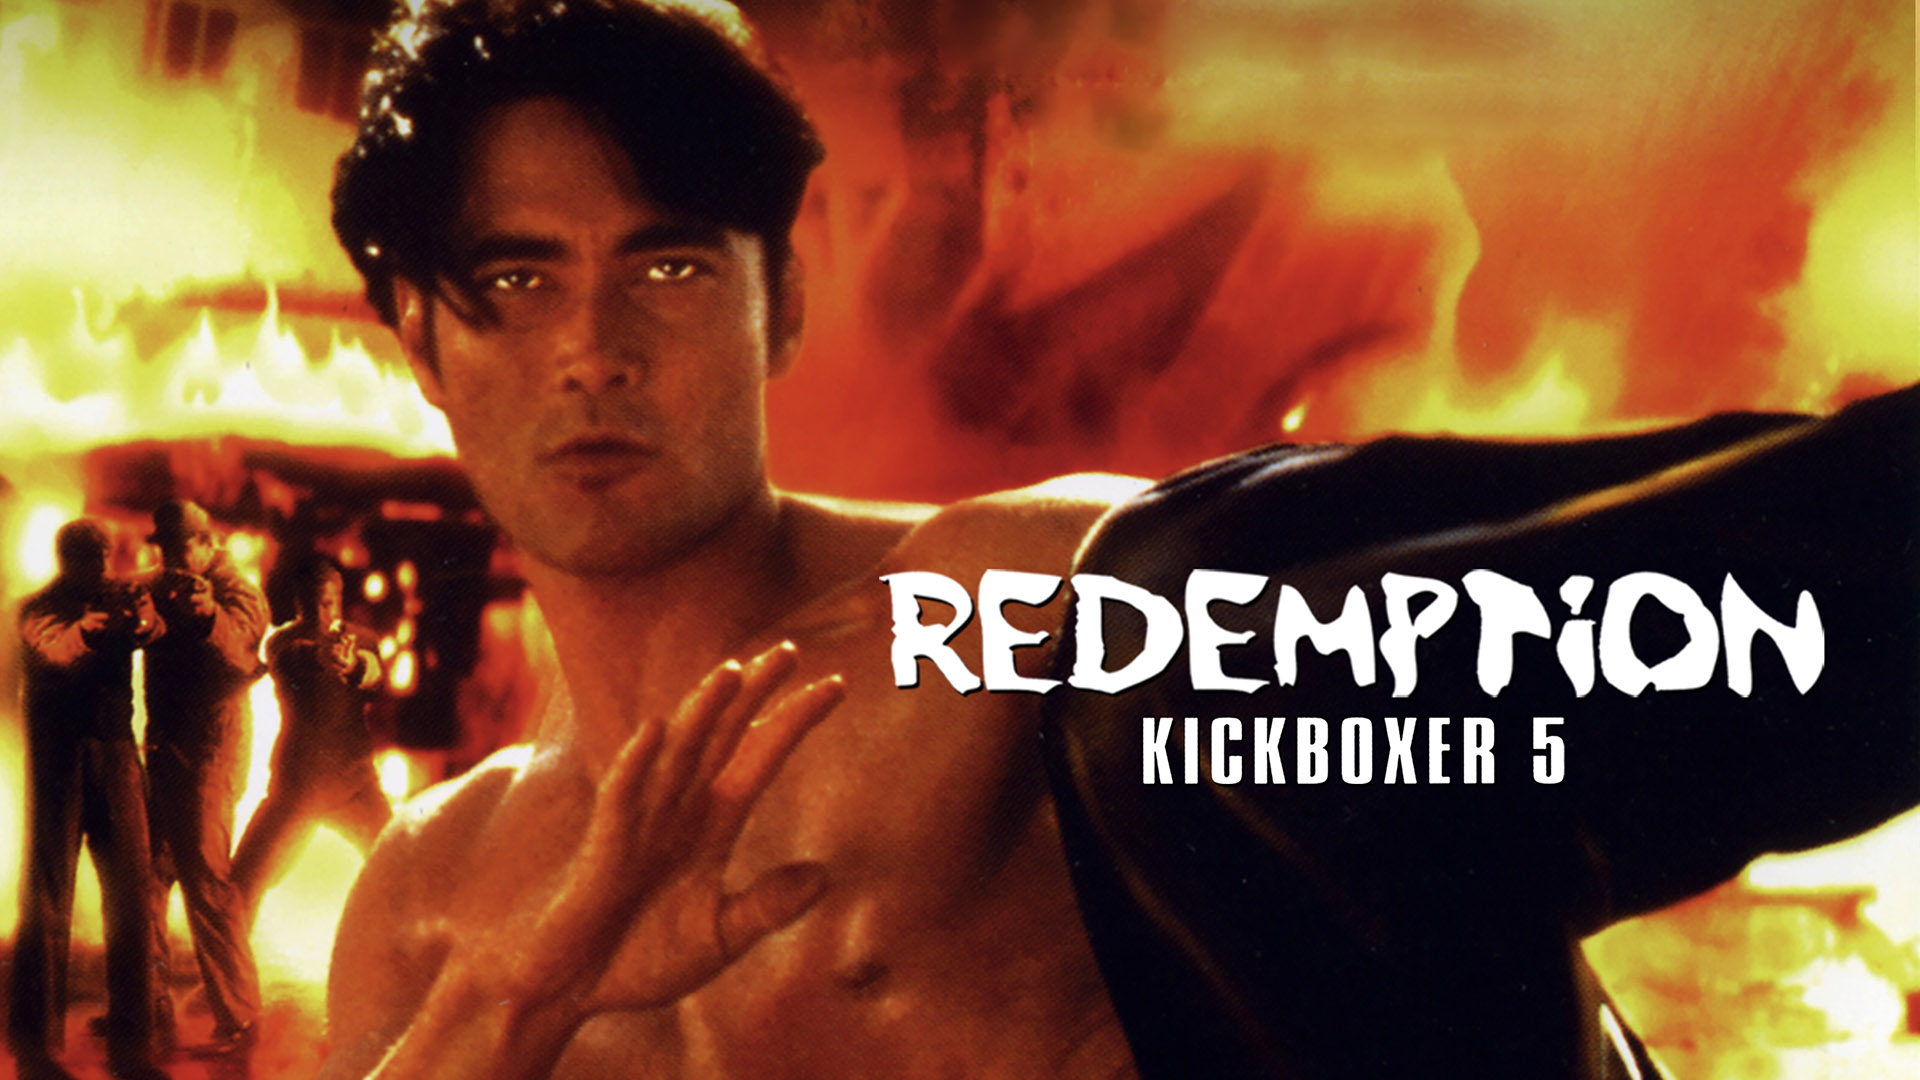 Watch Kickboxer 5: The Redemption Online | Stream Full Movies